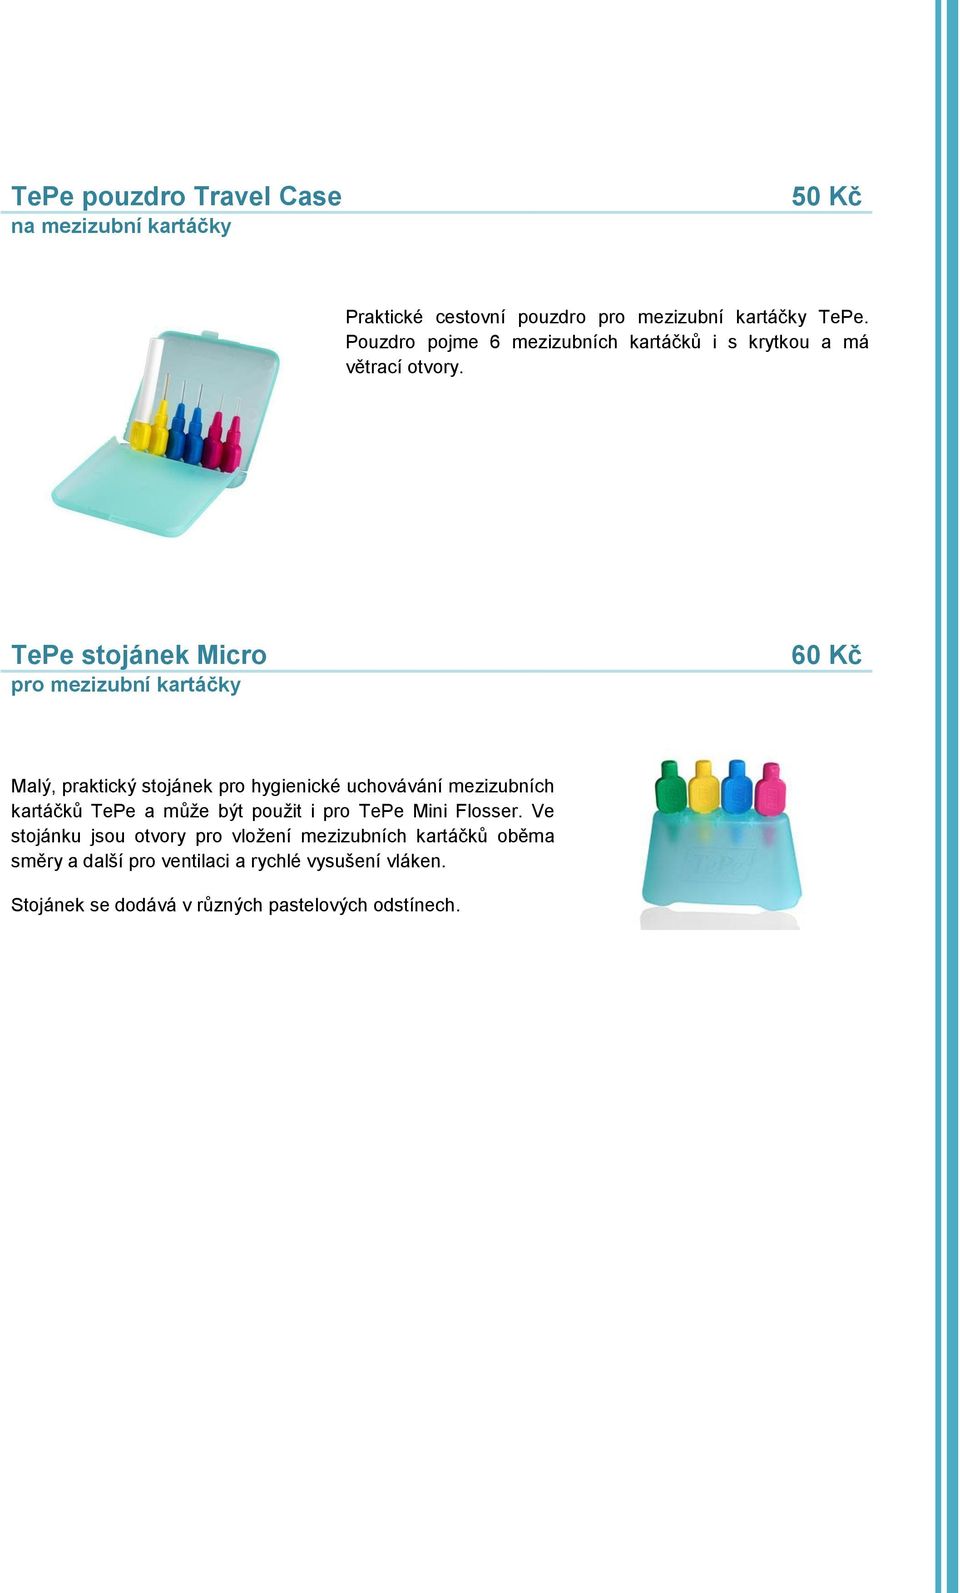 TePe stojánek Micro pro mezizubní kartáčky 60 Kč Malý, praktický stojánek pro hygienické uchovávání mezizubních kartáčků TePe a